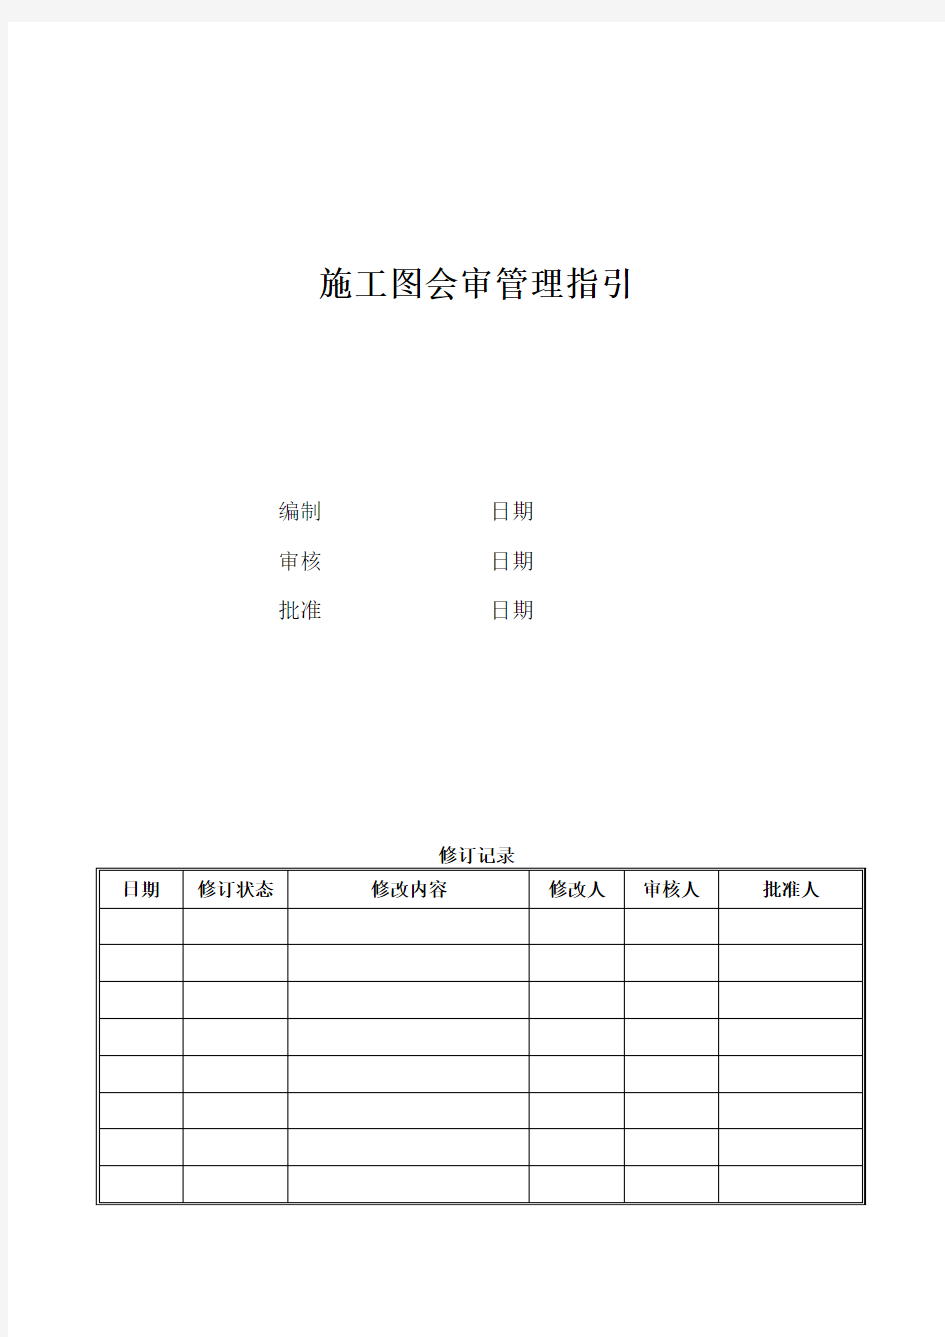 DH-GC-ZY04大华集团施工图会审管理指引2017.9.19稿